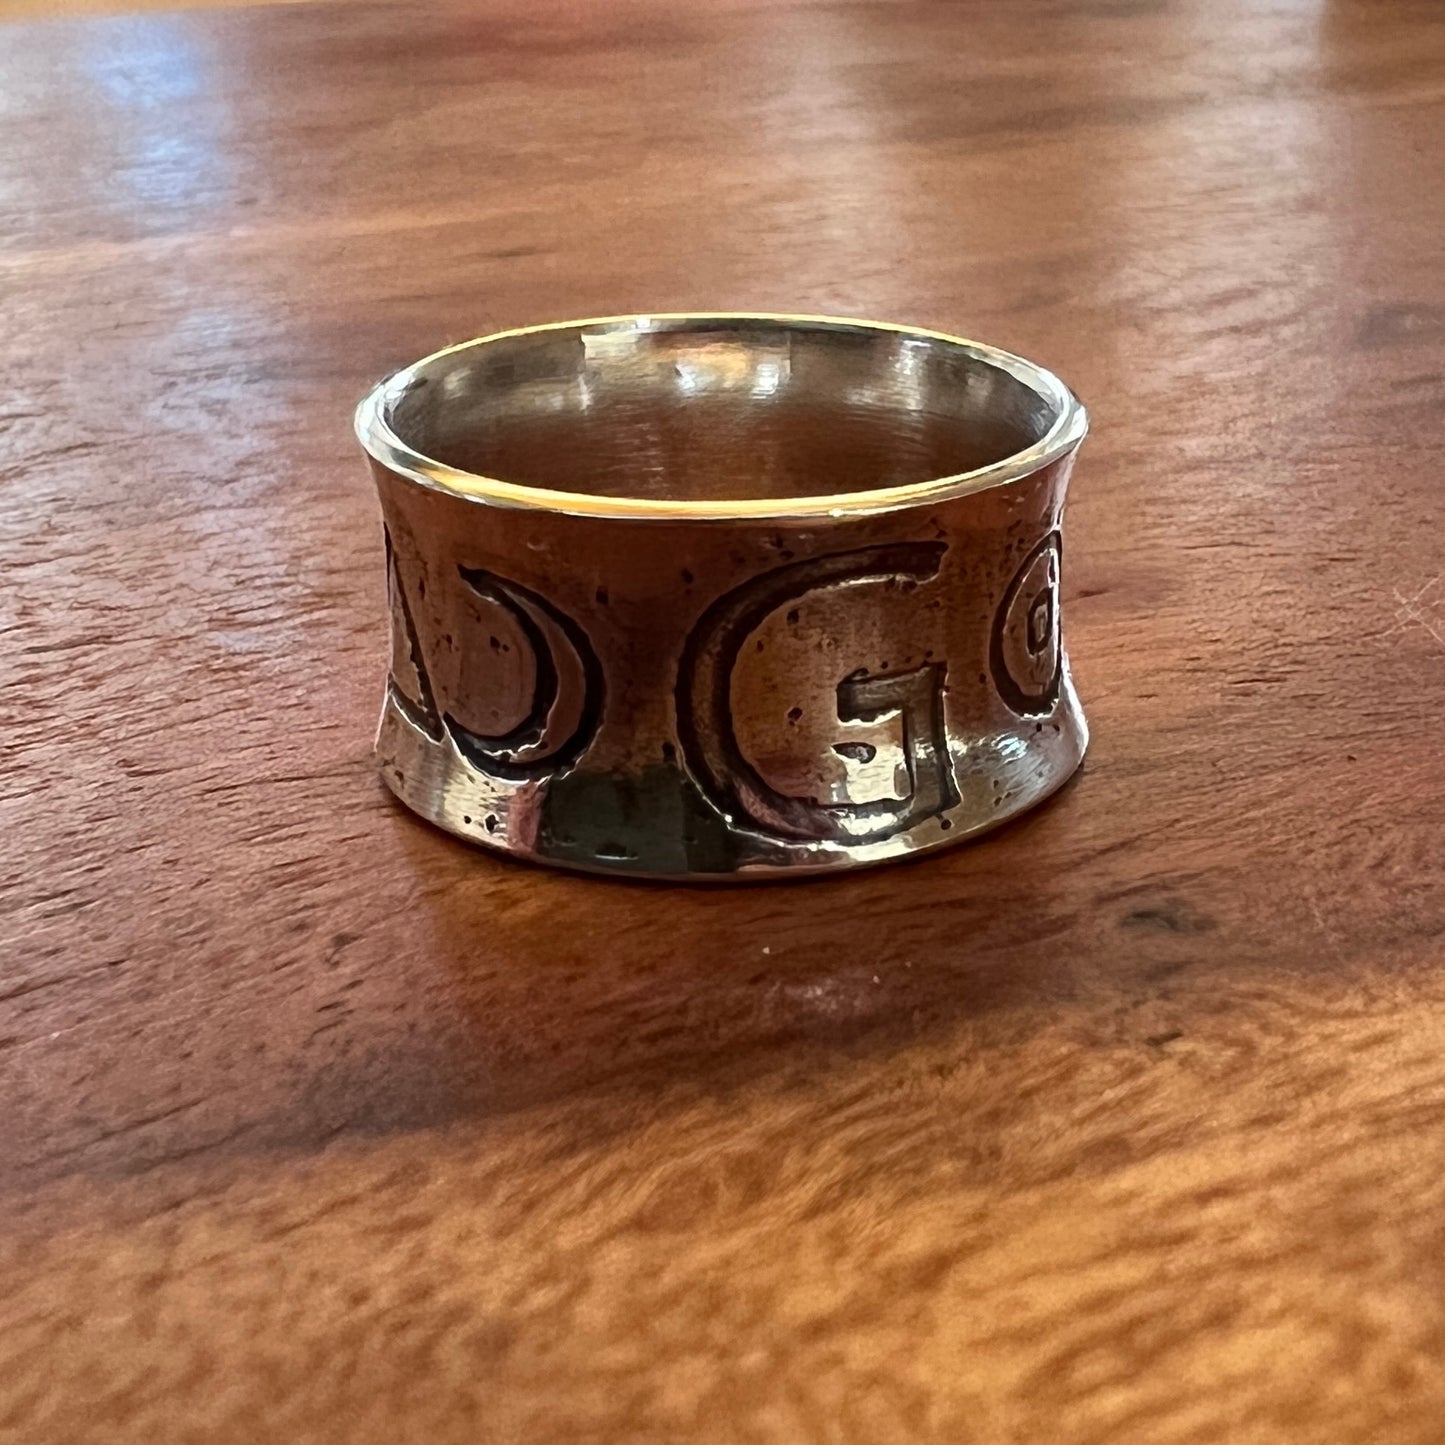 The Graymark Family Ring